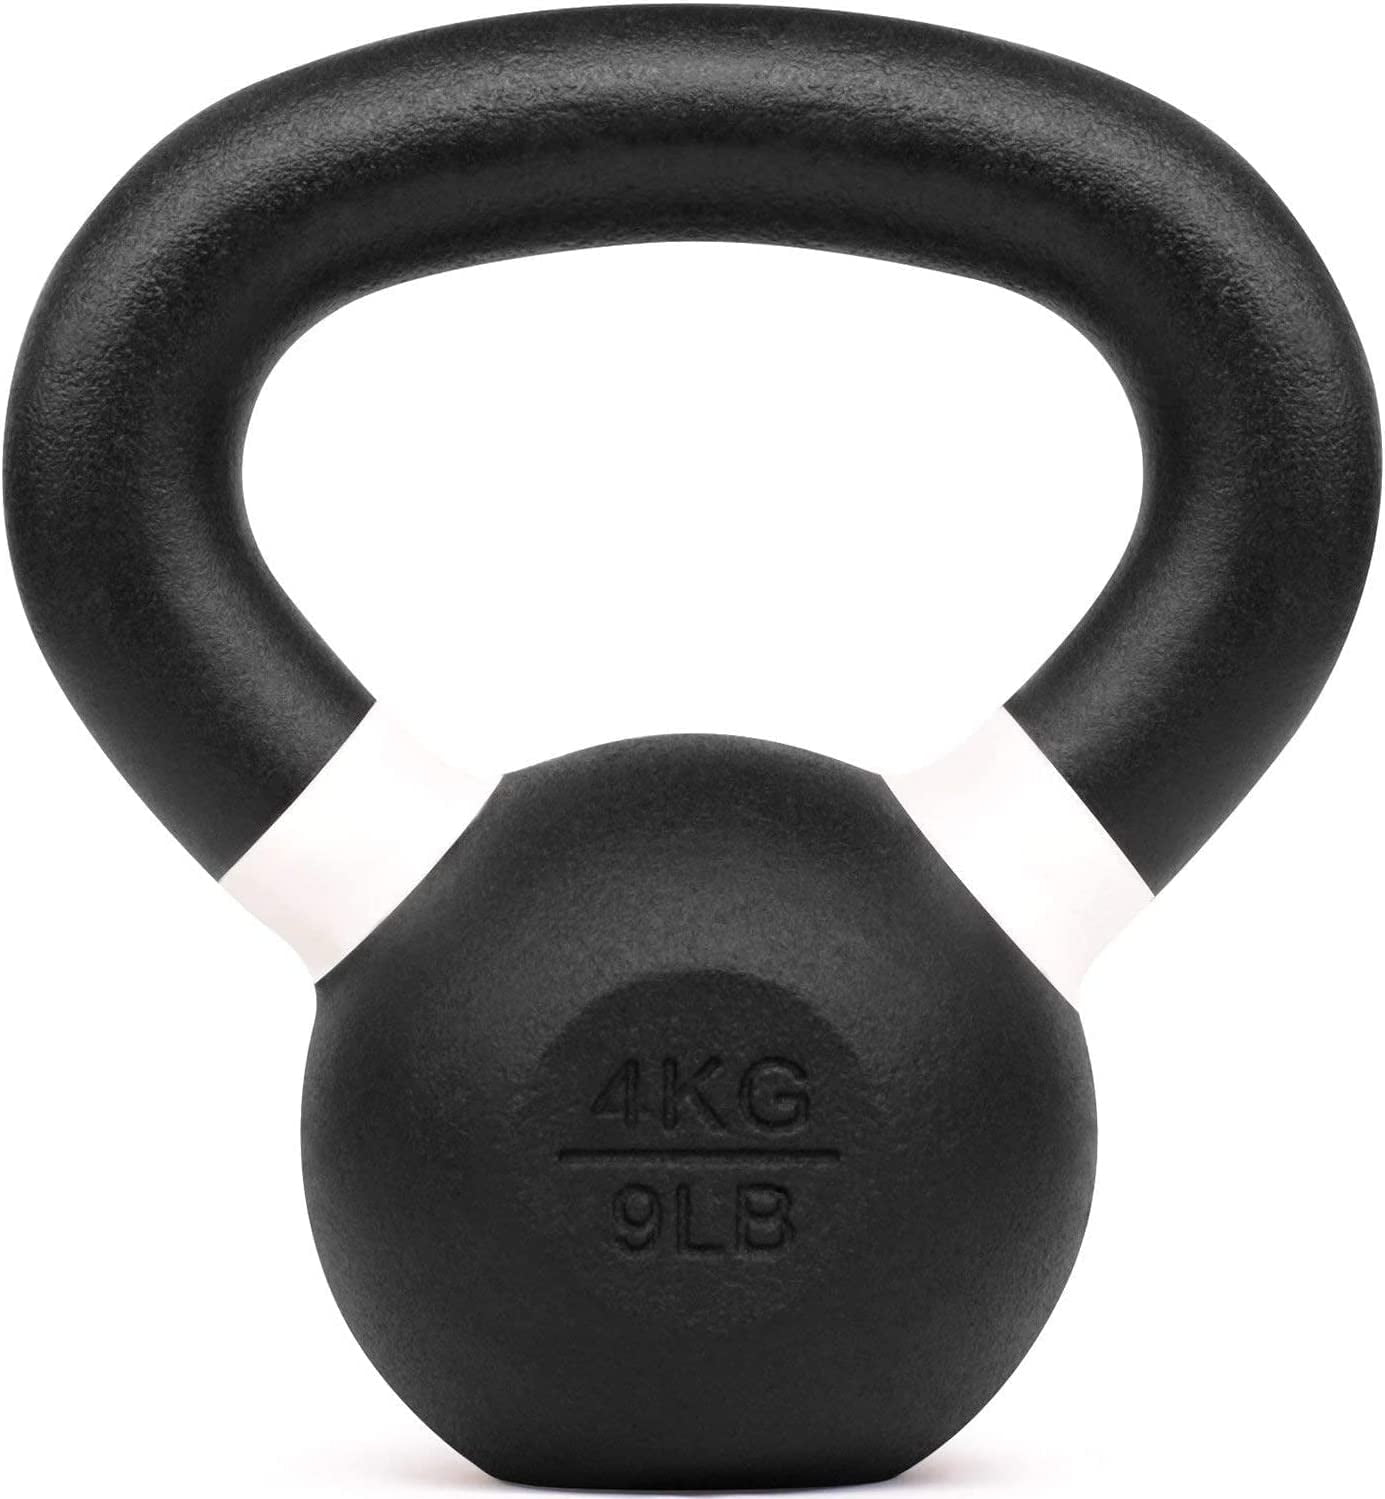 Premium Kettlebell - 8KG / 18 LB (KBPR2-18)